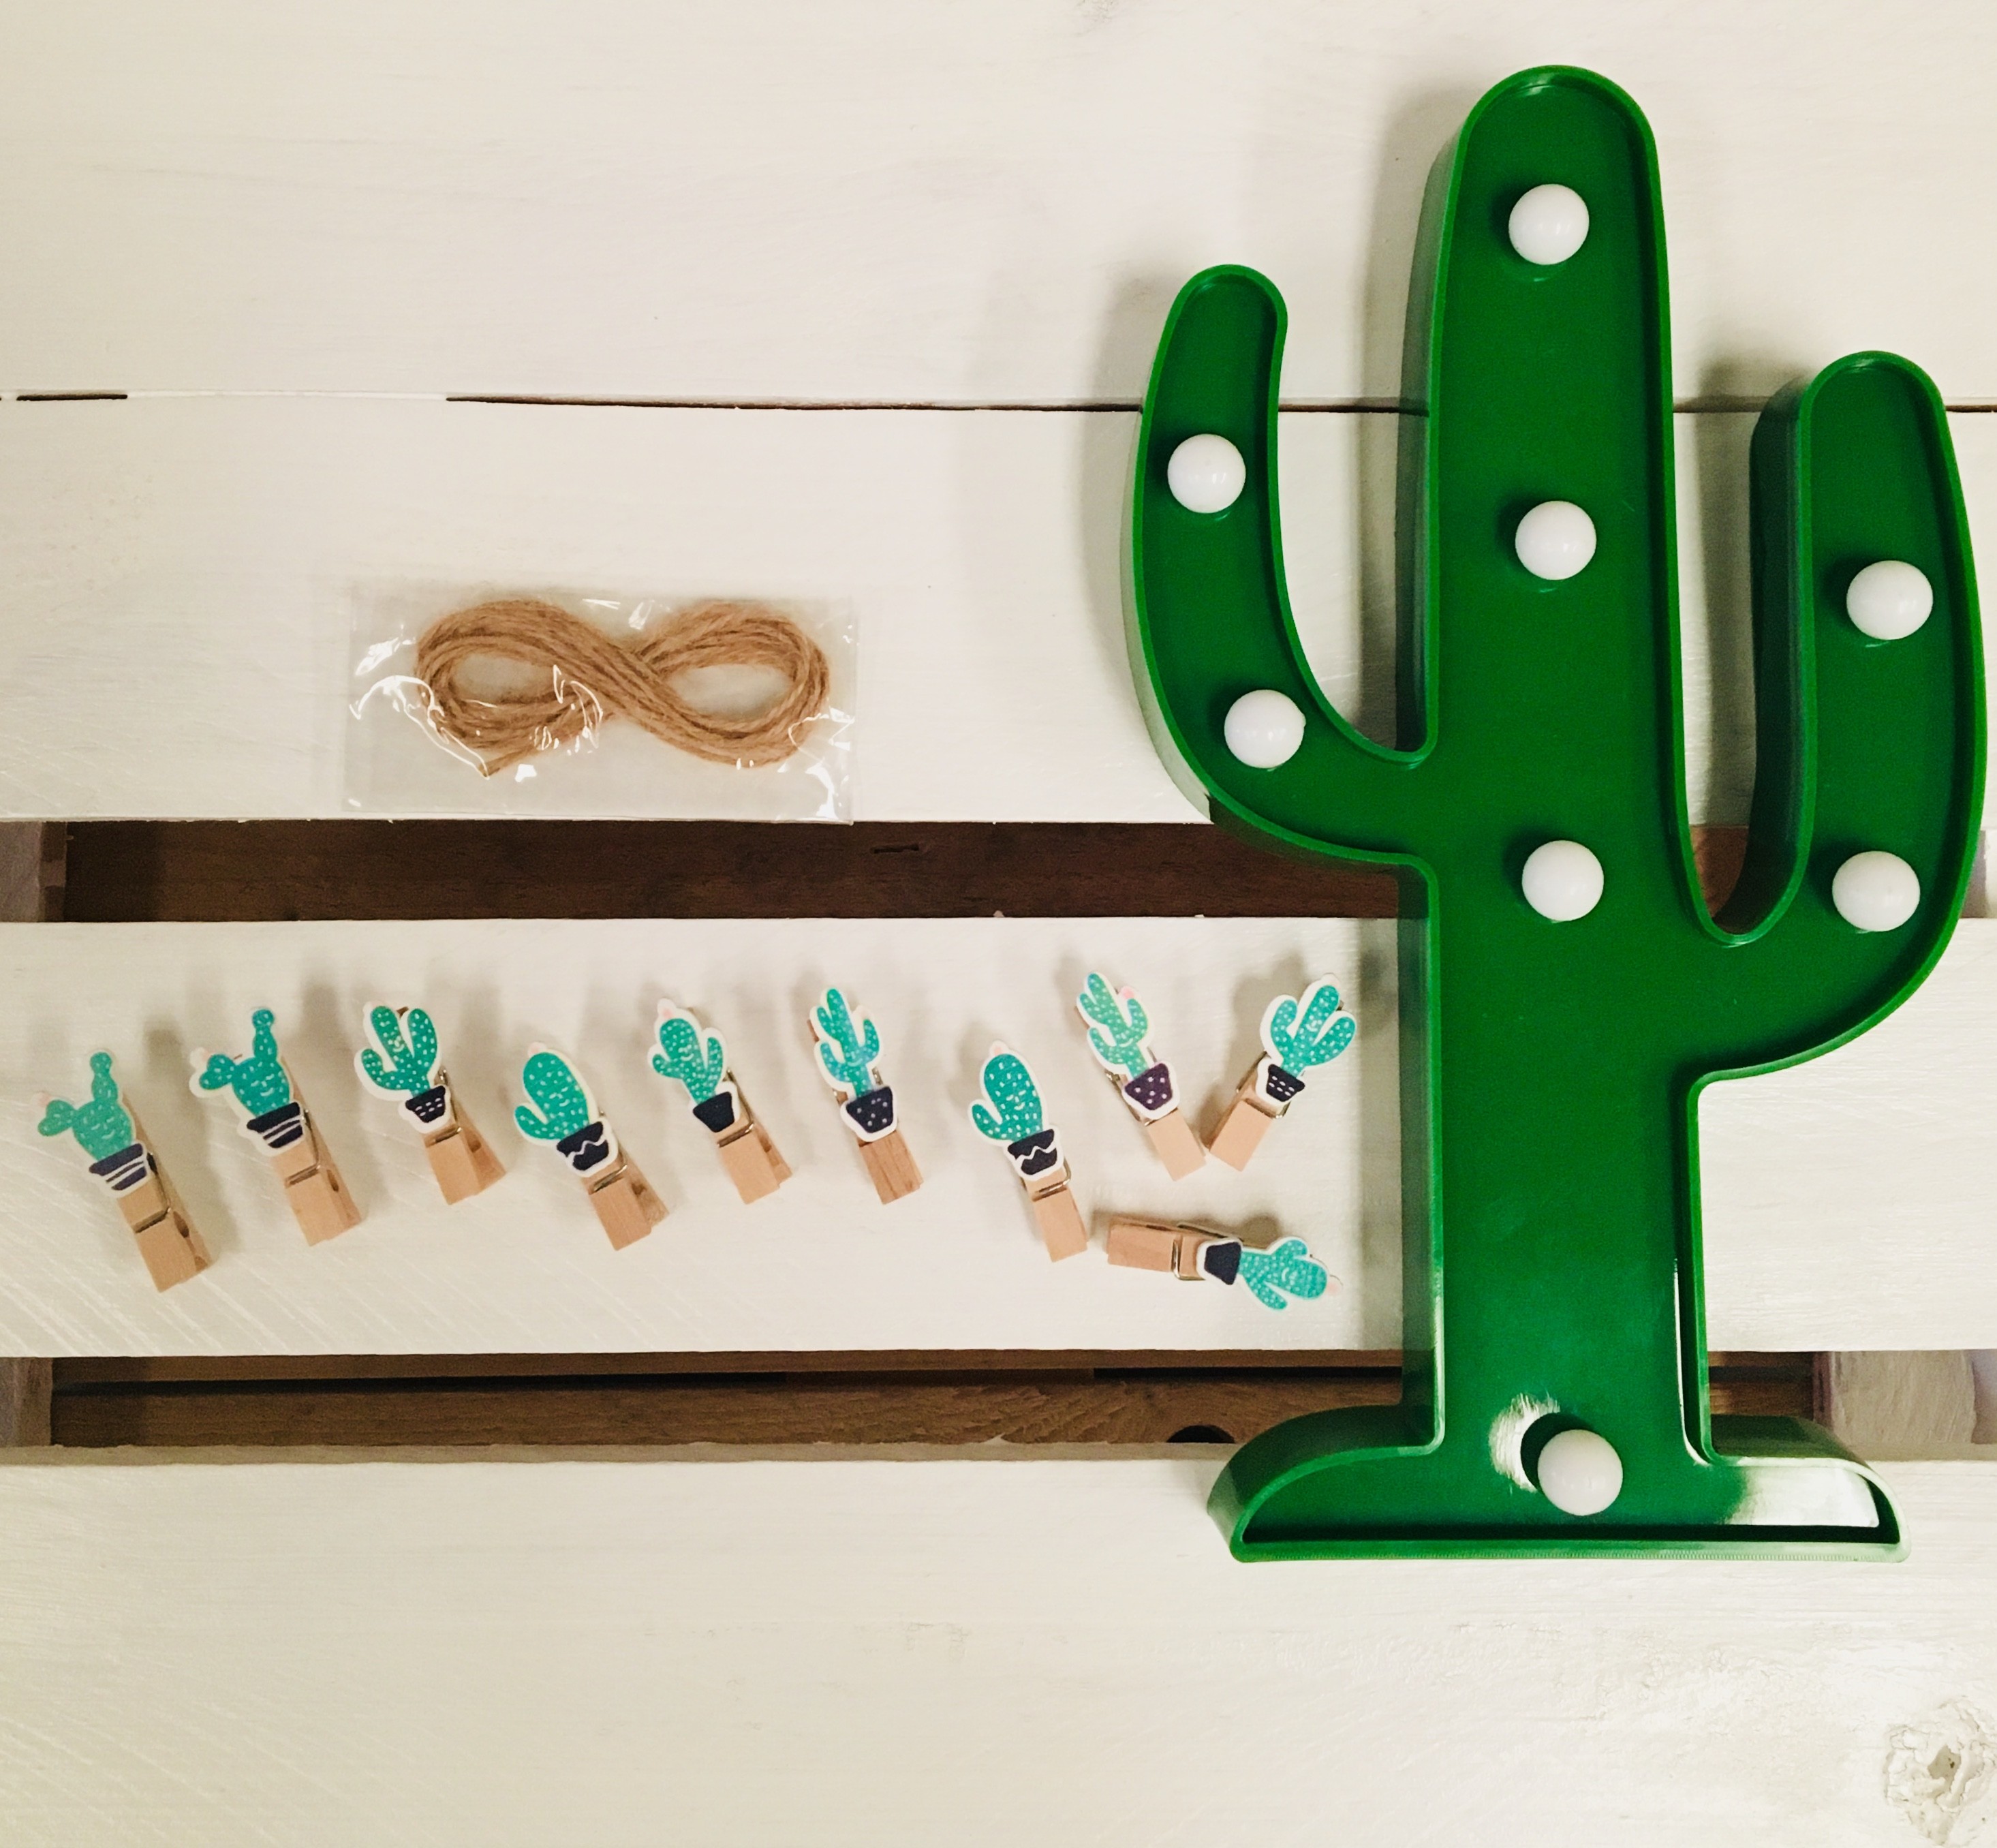 Amosfun 10 piezas mini pinzas de madera en forma de cactus colgantes de pared clips de fotos clavijas pinzas artesanales con cuerda de cáñamo 